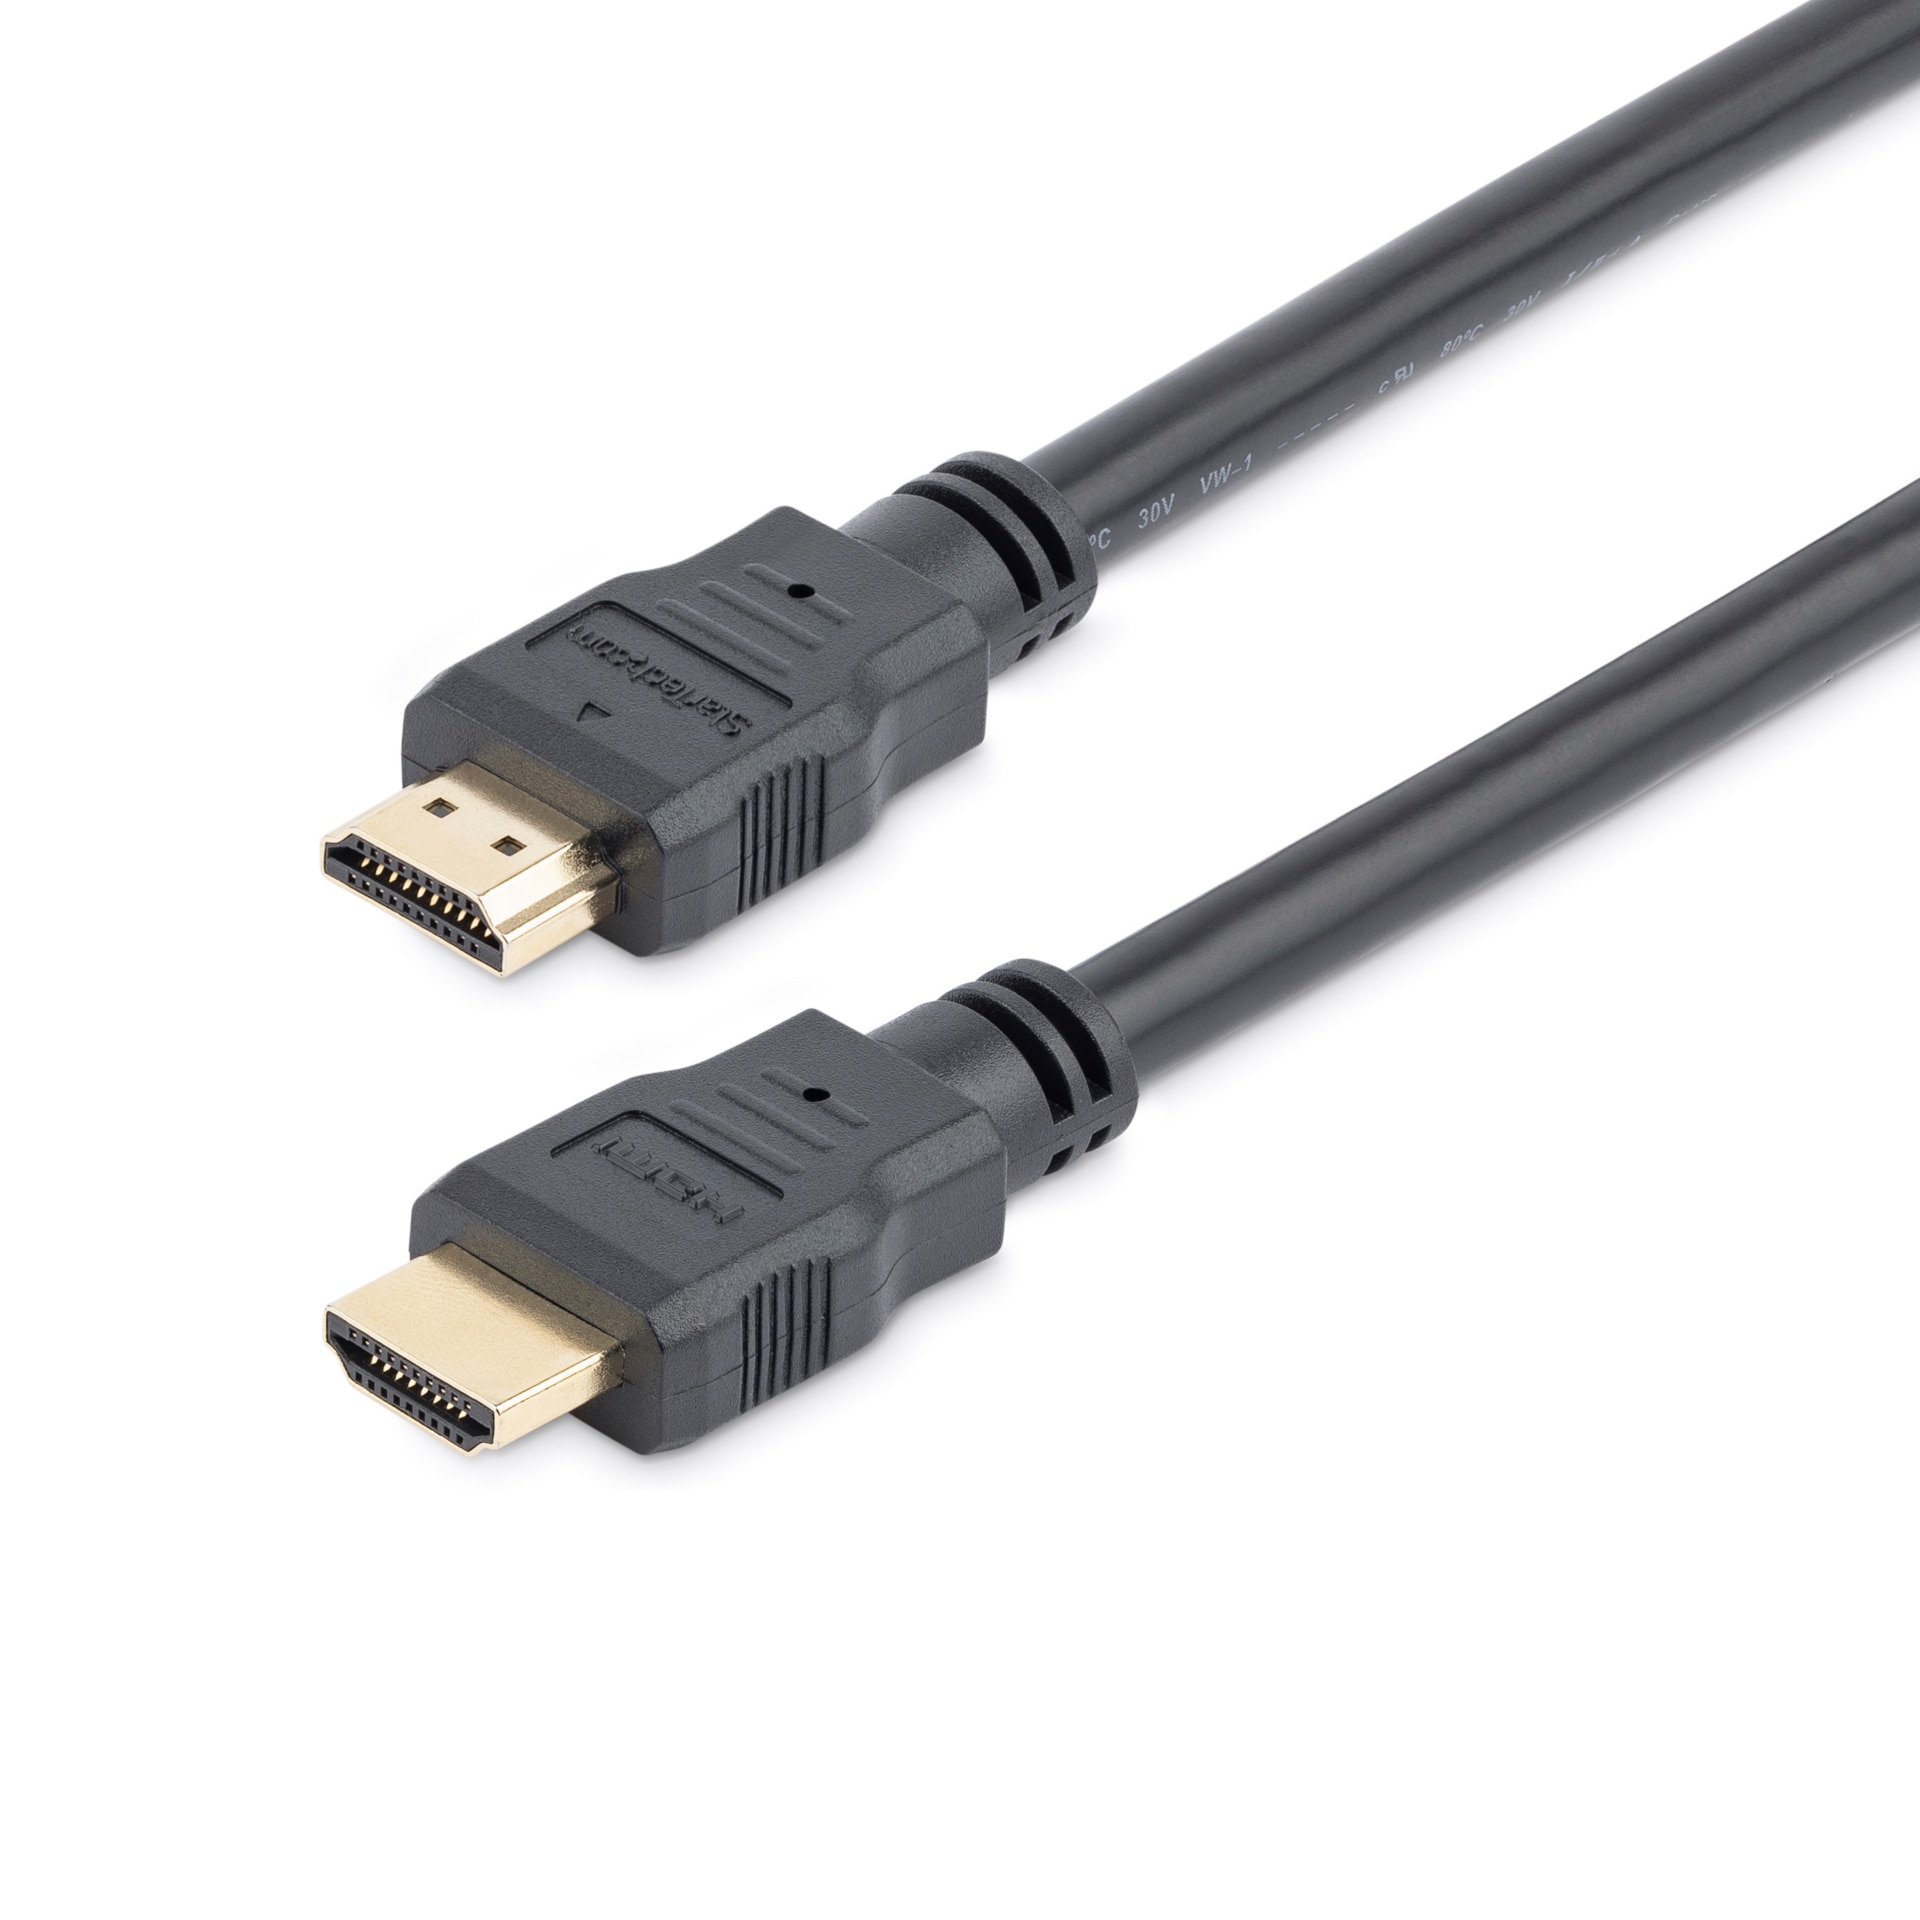 Micro-HDMI to HDMI cable 3M